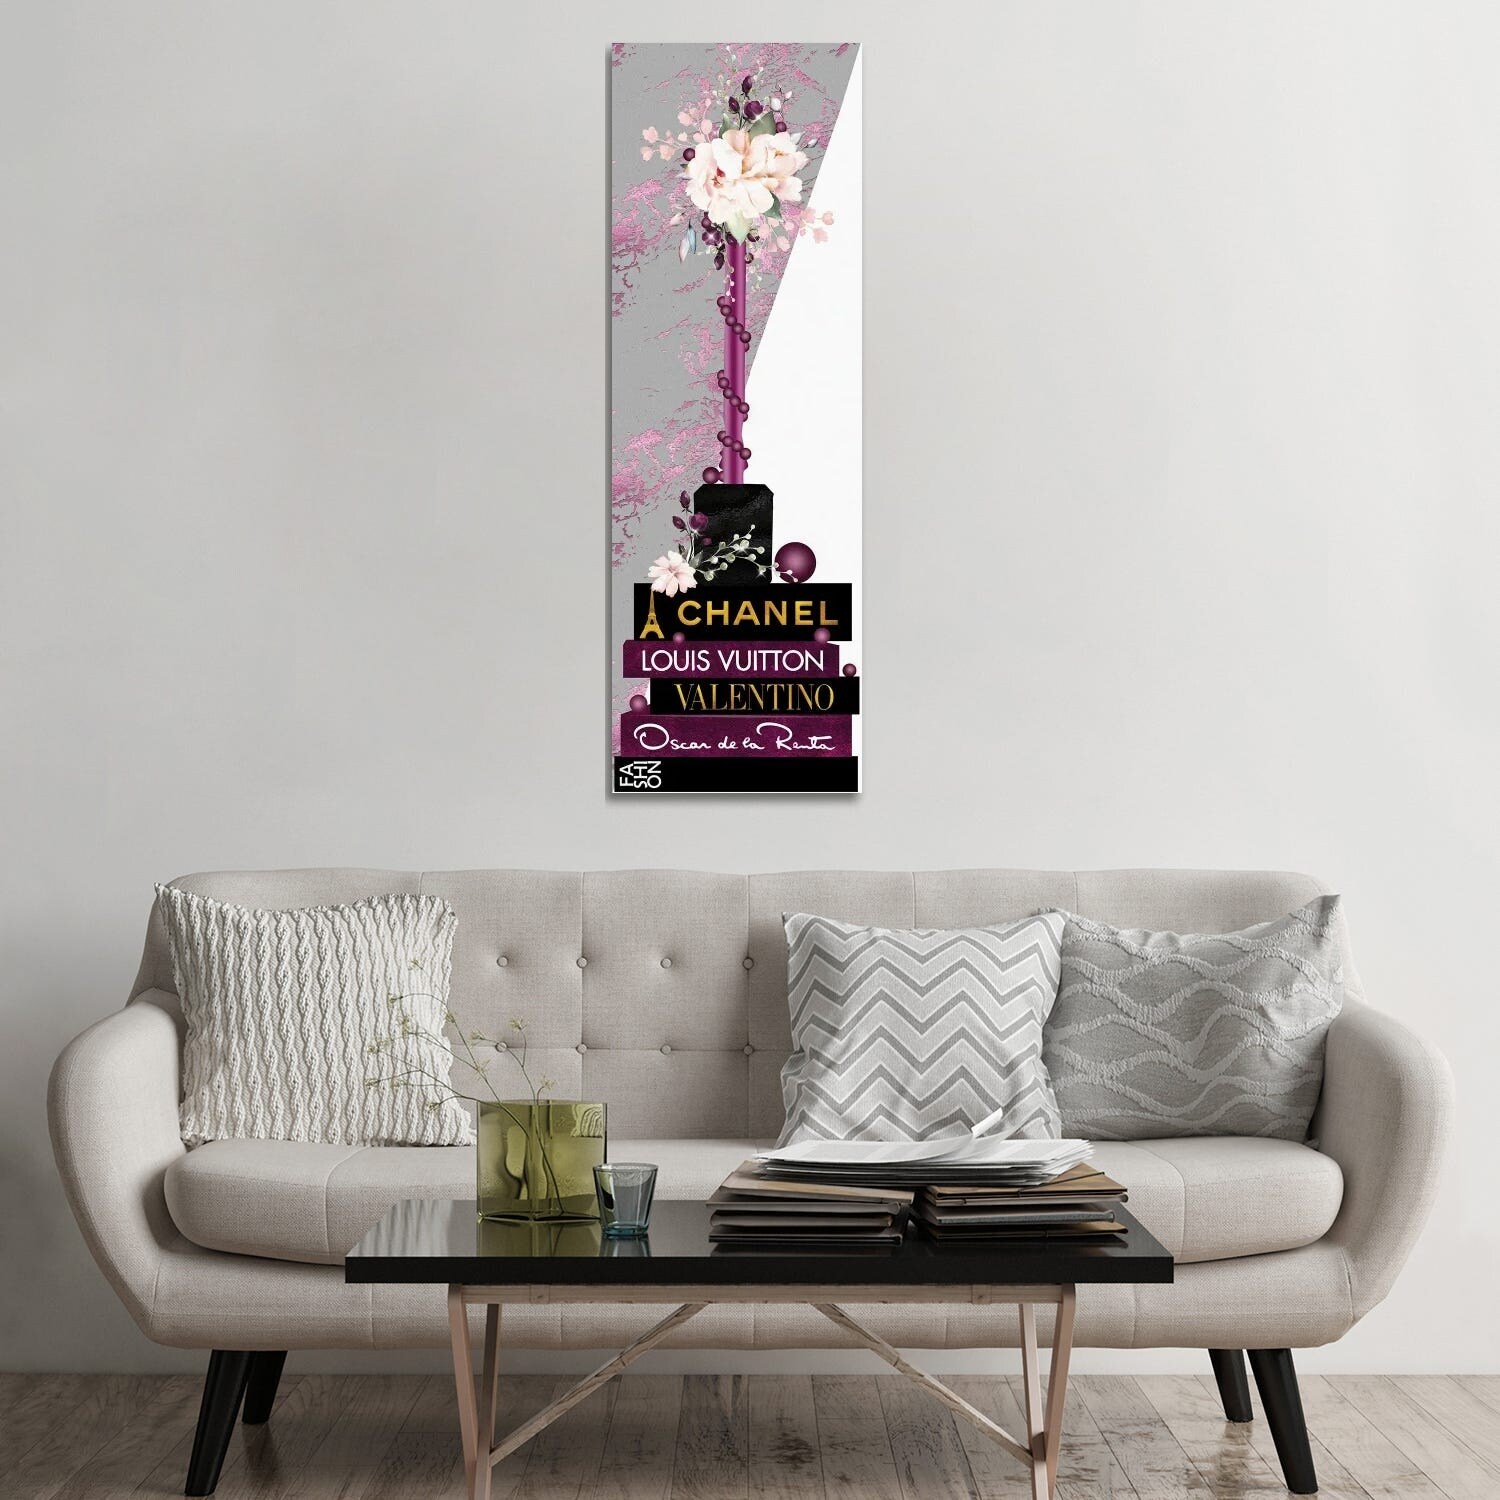 Pomaikai Barron Canvas Art Prints - Magenta Lip Gloss Vase with Roses & Pearls on Fashion Books ( Holiday & Seasonal > Classroom Wall Art > Reading 